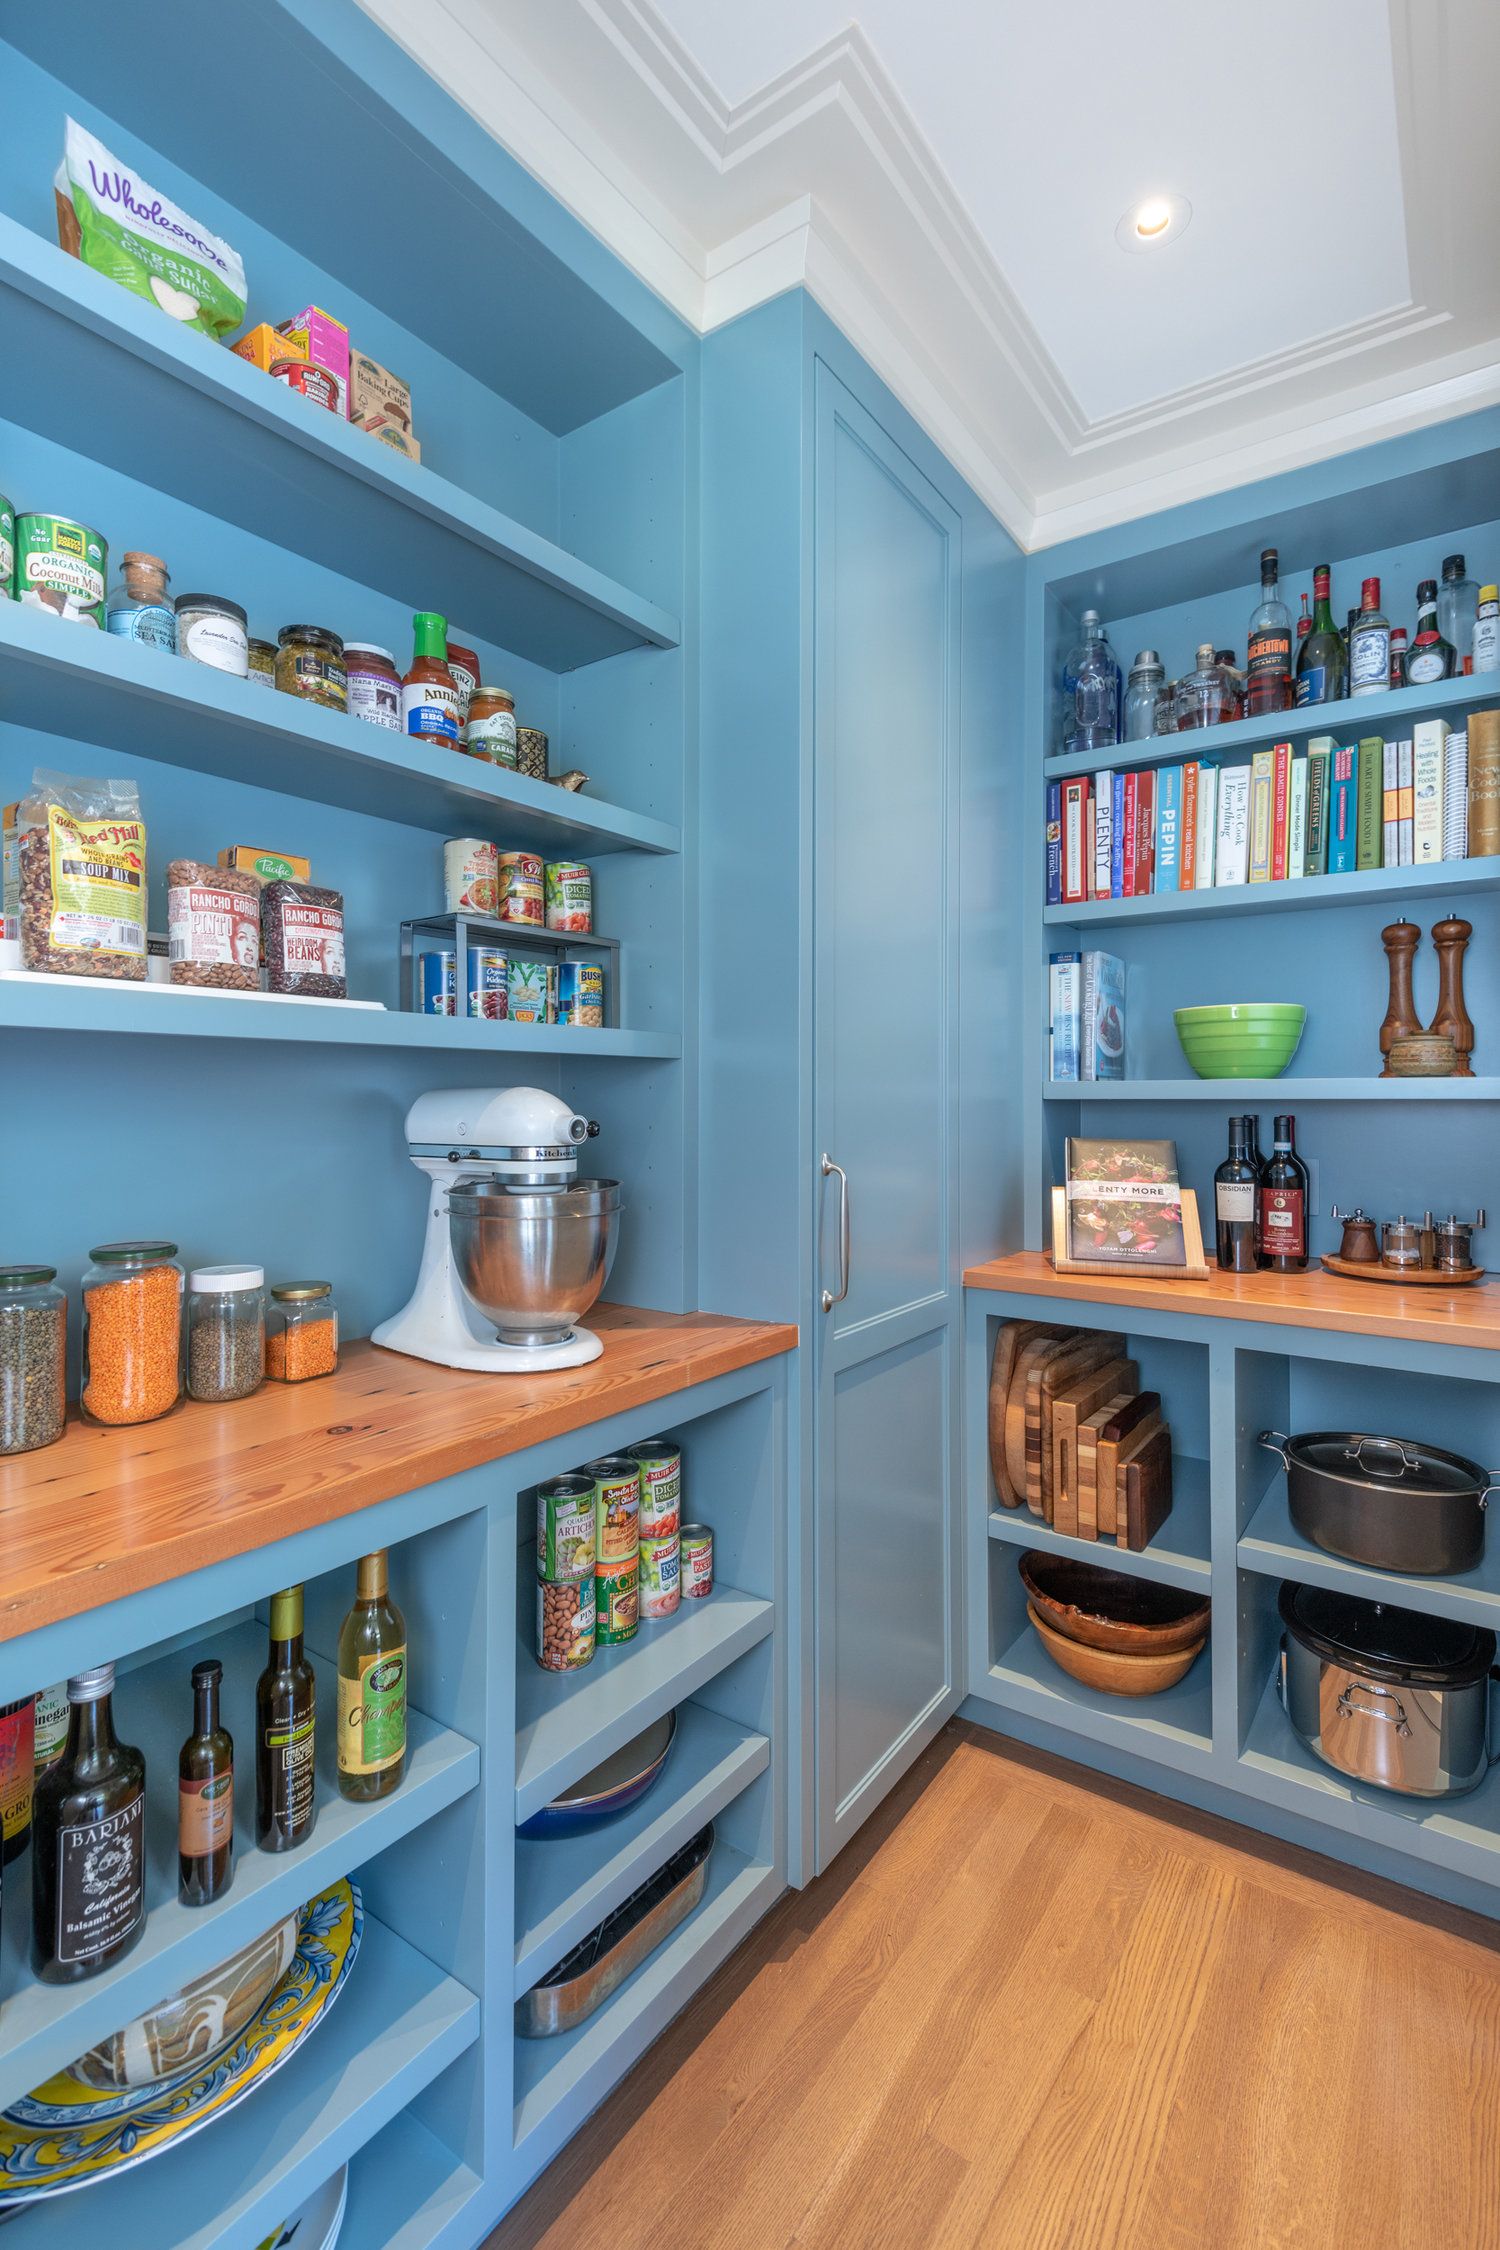 Brian Home: Shelf Open Kitchen Cabinets No Doors : 10 Beautiful Open